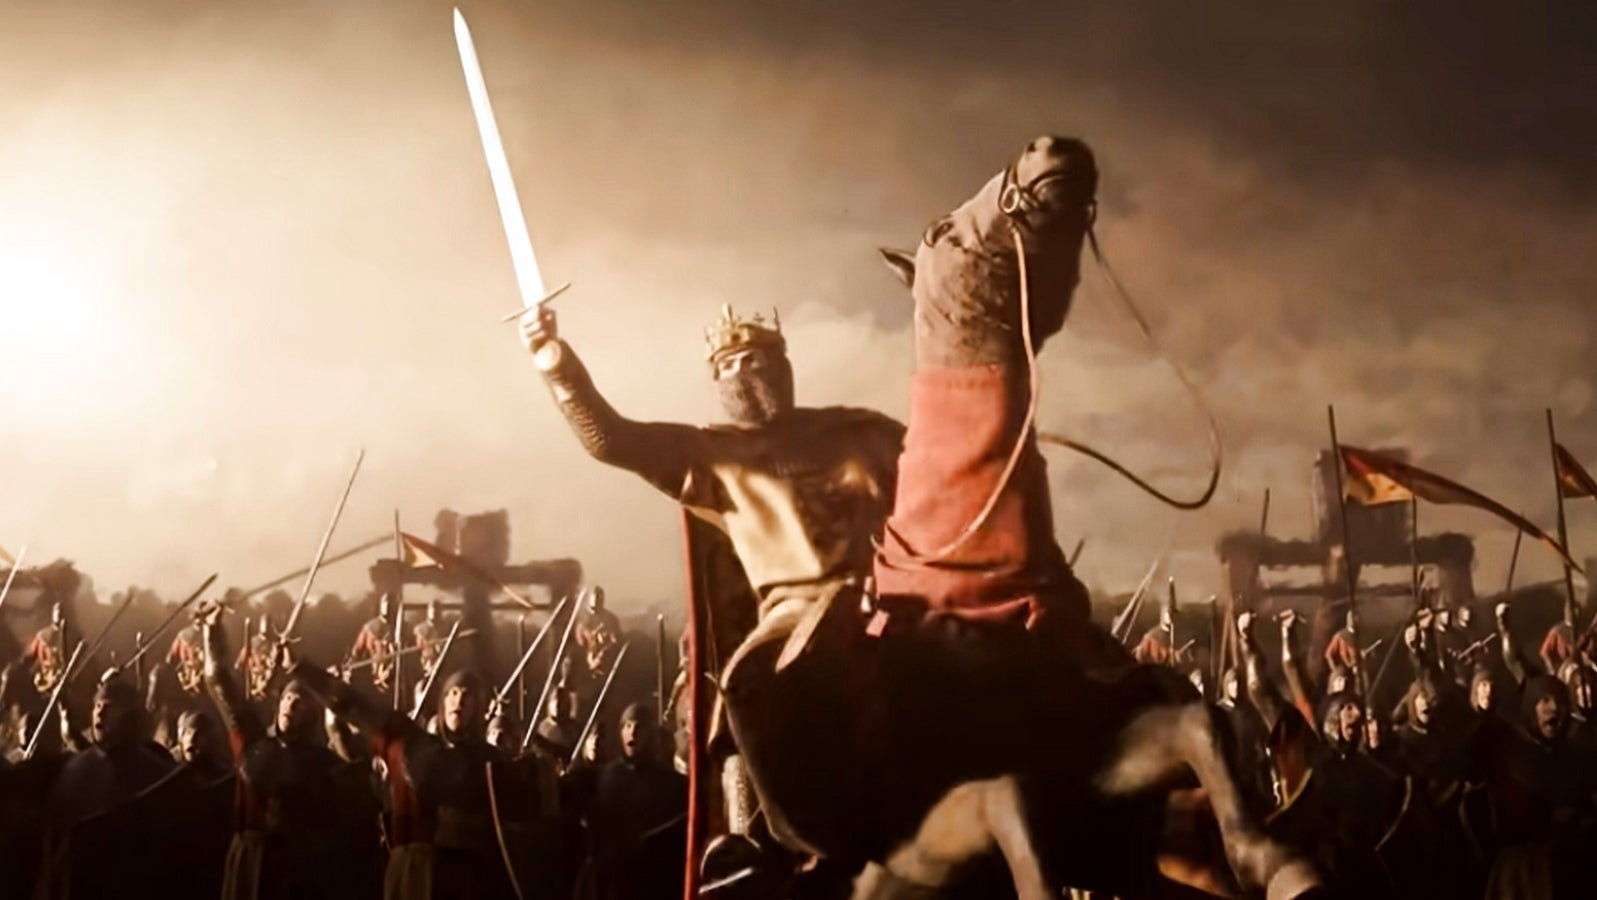 Bilder zu Crusader Kings 3 für PS5 und Xbox Series X/S bestätigt